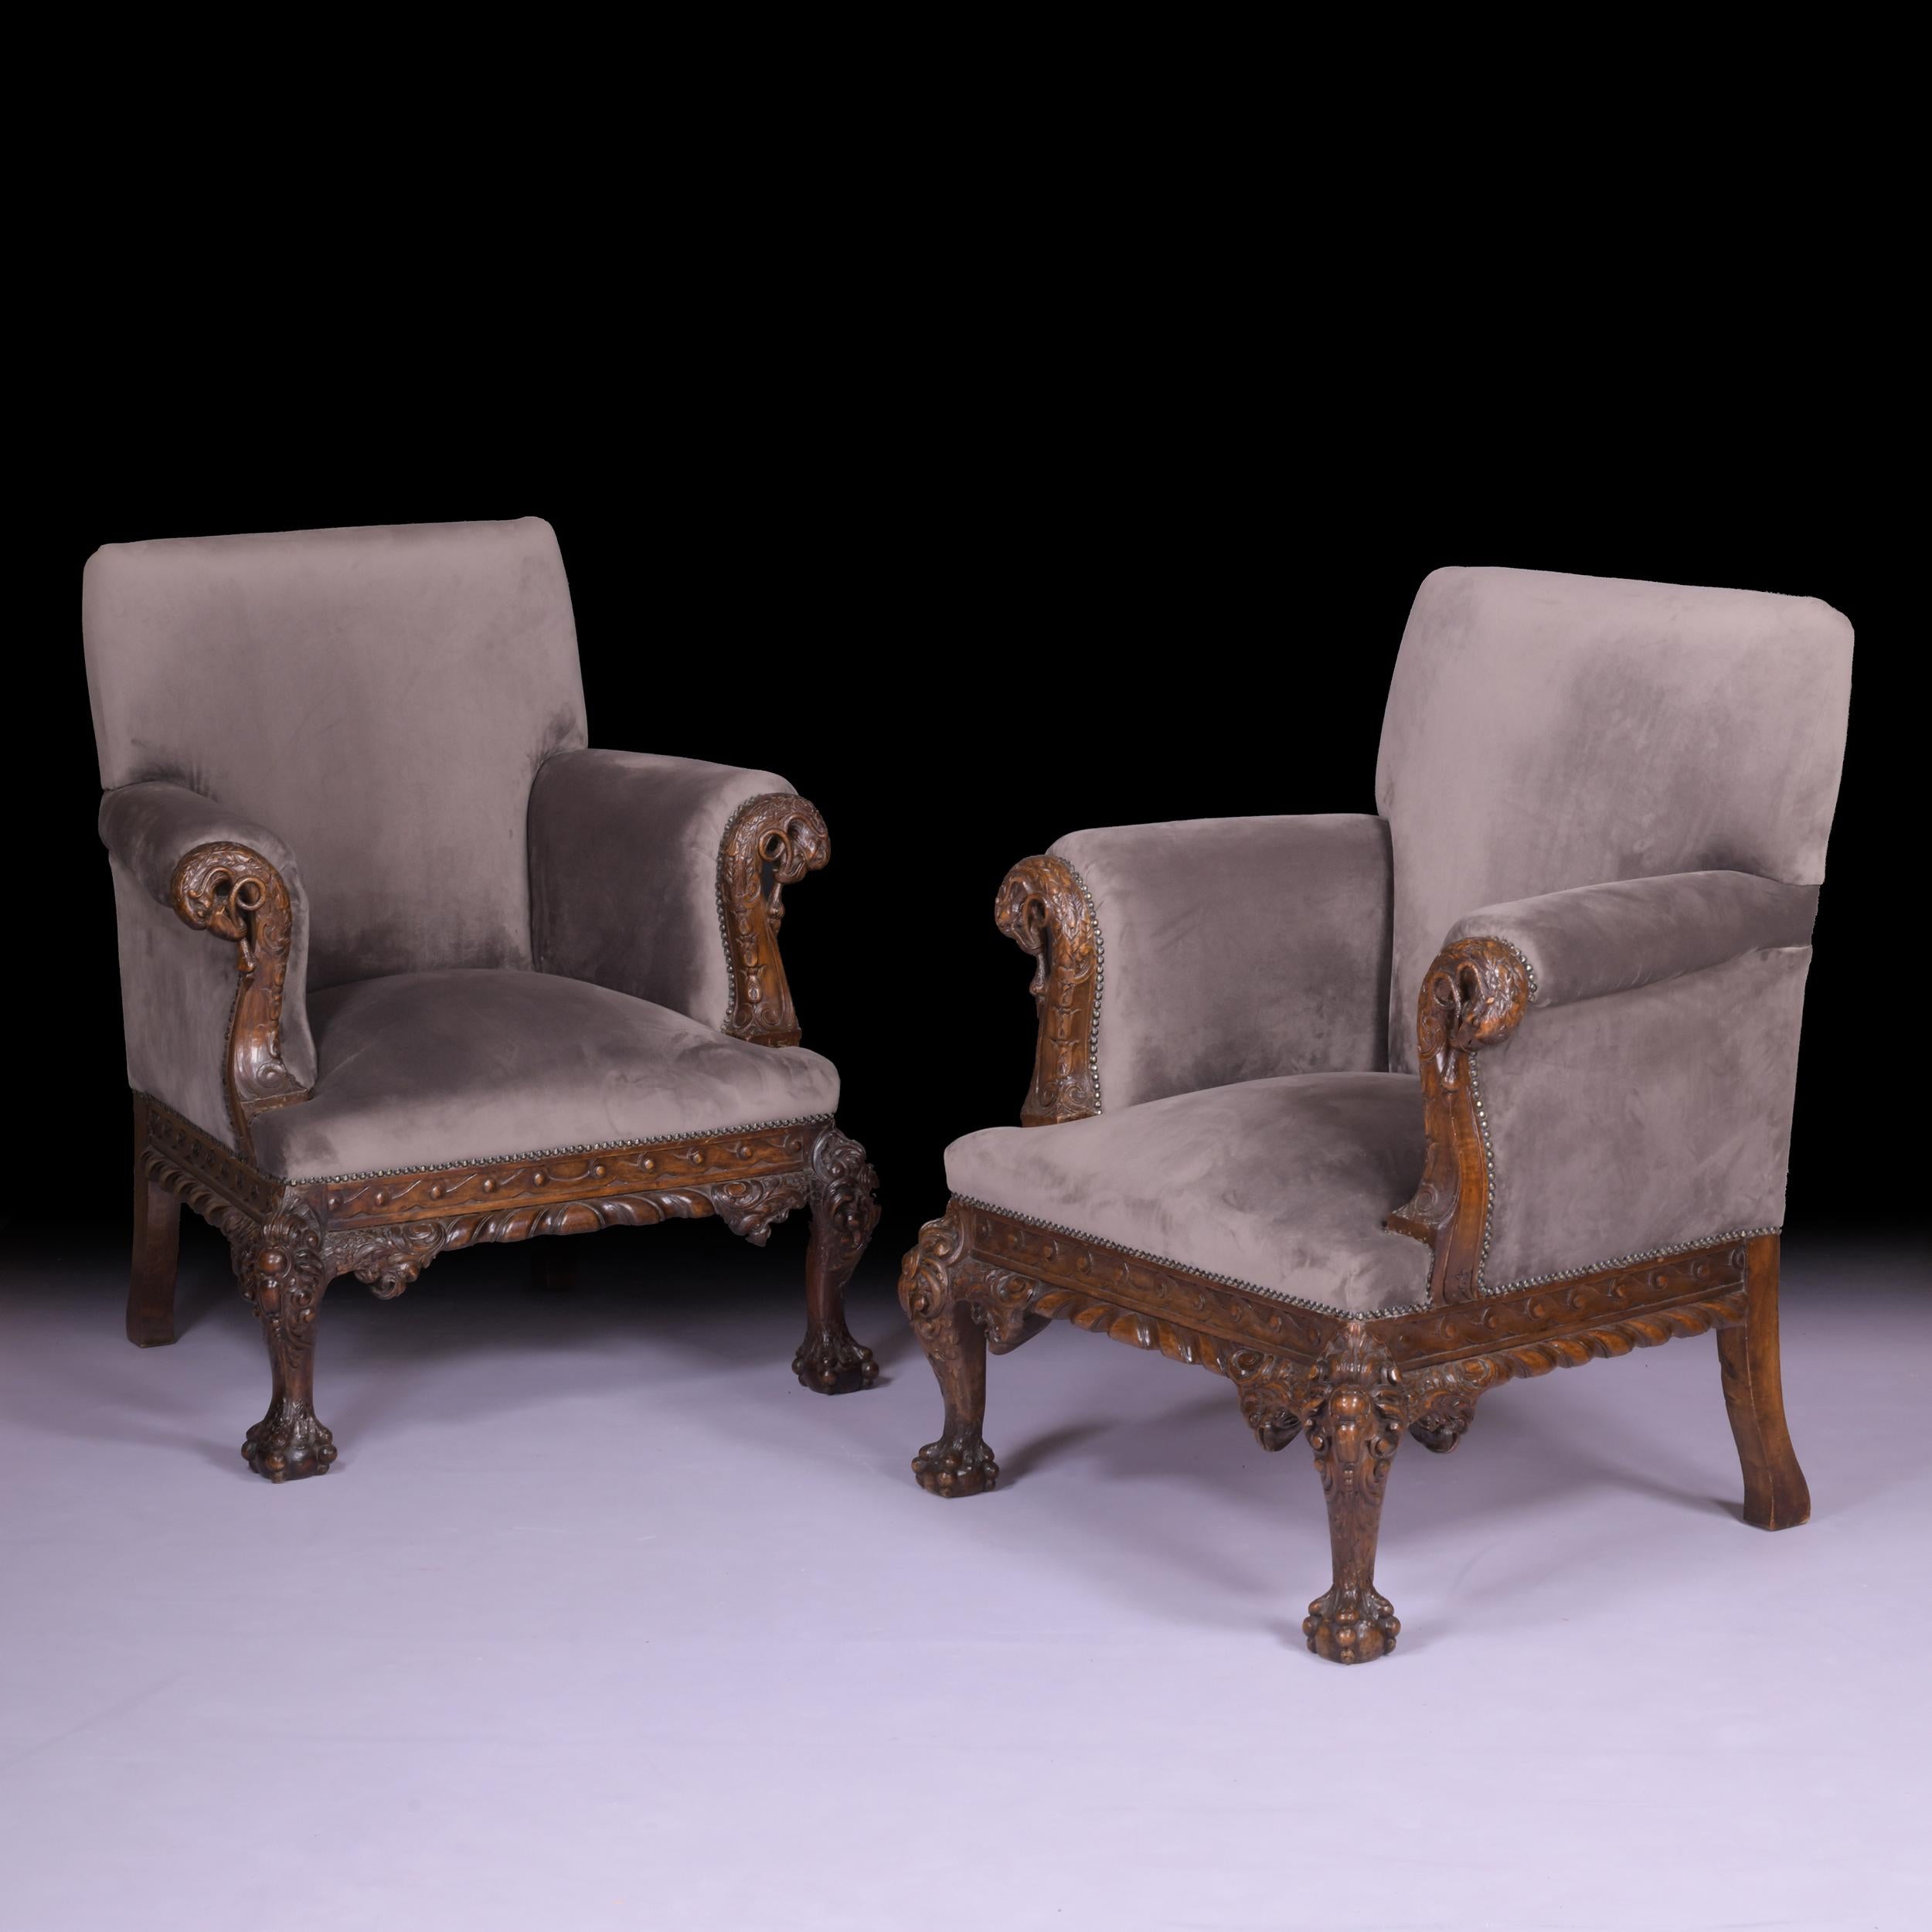 Une très belle paire de fauteuils à cadre en acajou irlandais du 19ème siècle, avec un dossier rectangulaire et des bras à volutes, recouverts d'un tissu de velours gris, au-dessus d'un tablier à volutes d'acanthe, sur de lourds pieds à boule et